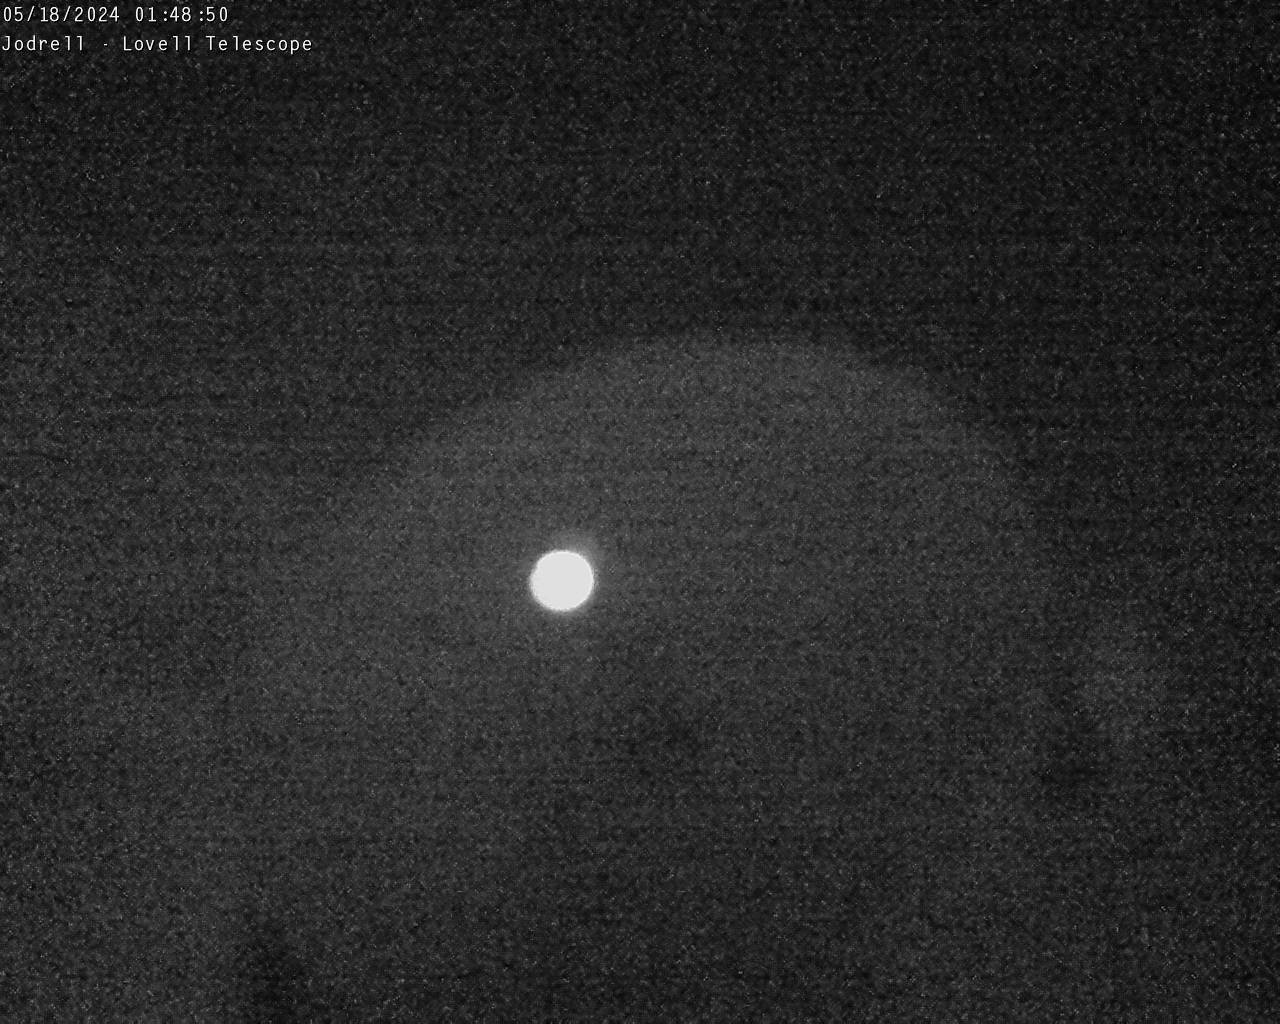 Observatoire de Jodrell Bank Sa. 01:49